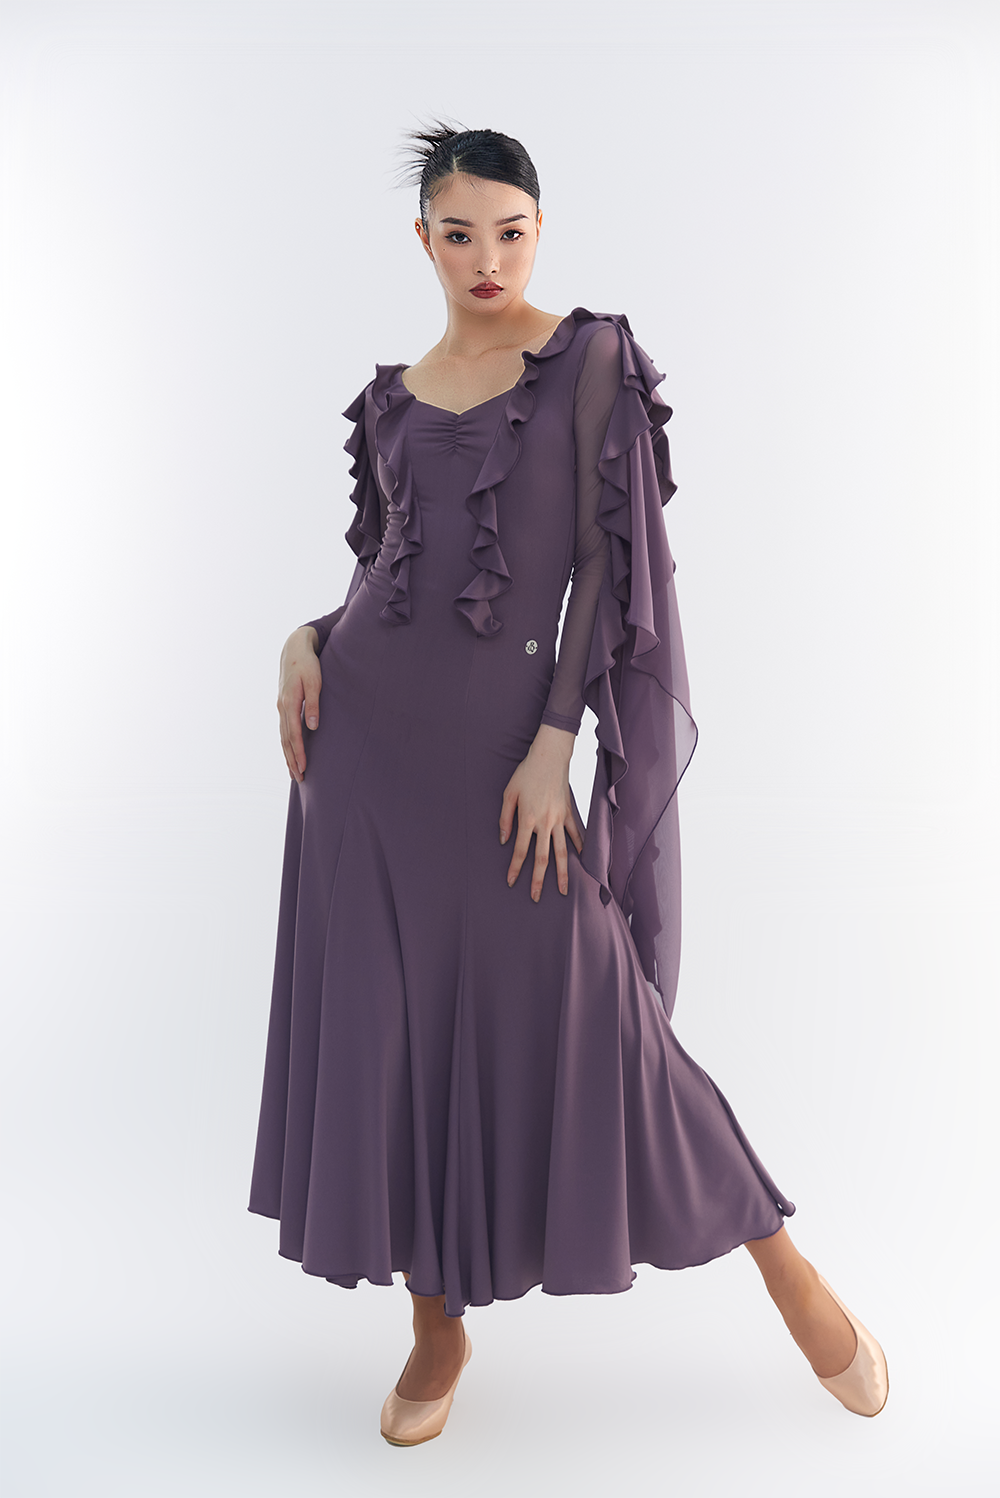 DANCE QUEEN 606-2 Tailor Made Light Purple Dress